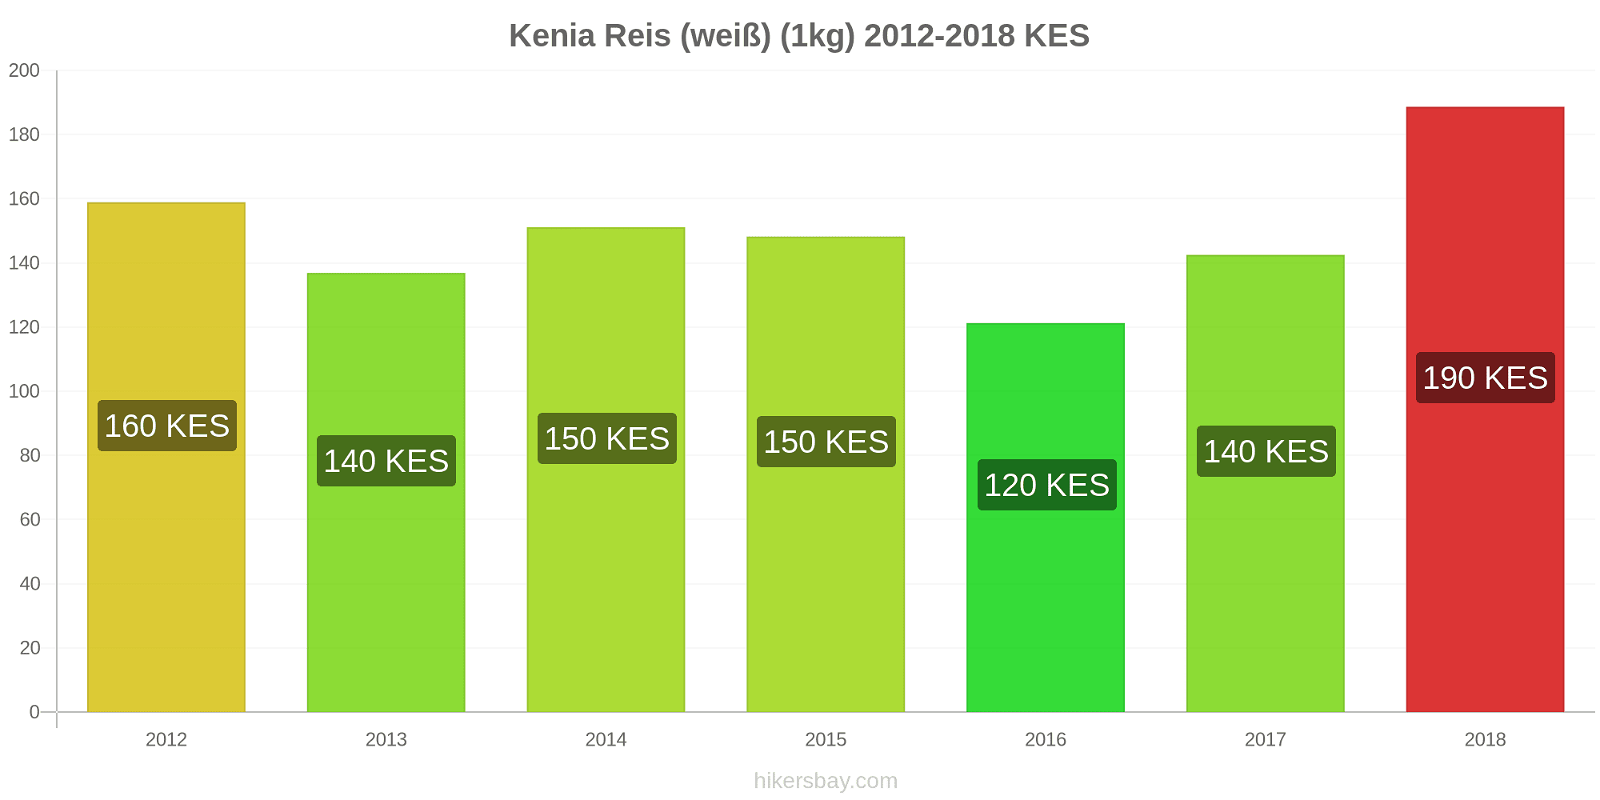 Kenia Preisänderungen Reis (weiß) (1kg) hikersbay.com